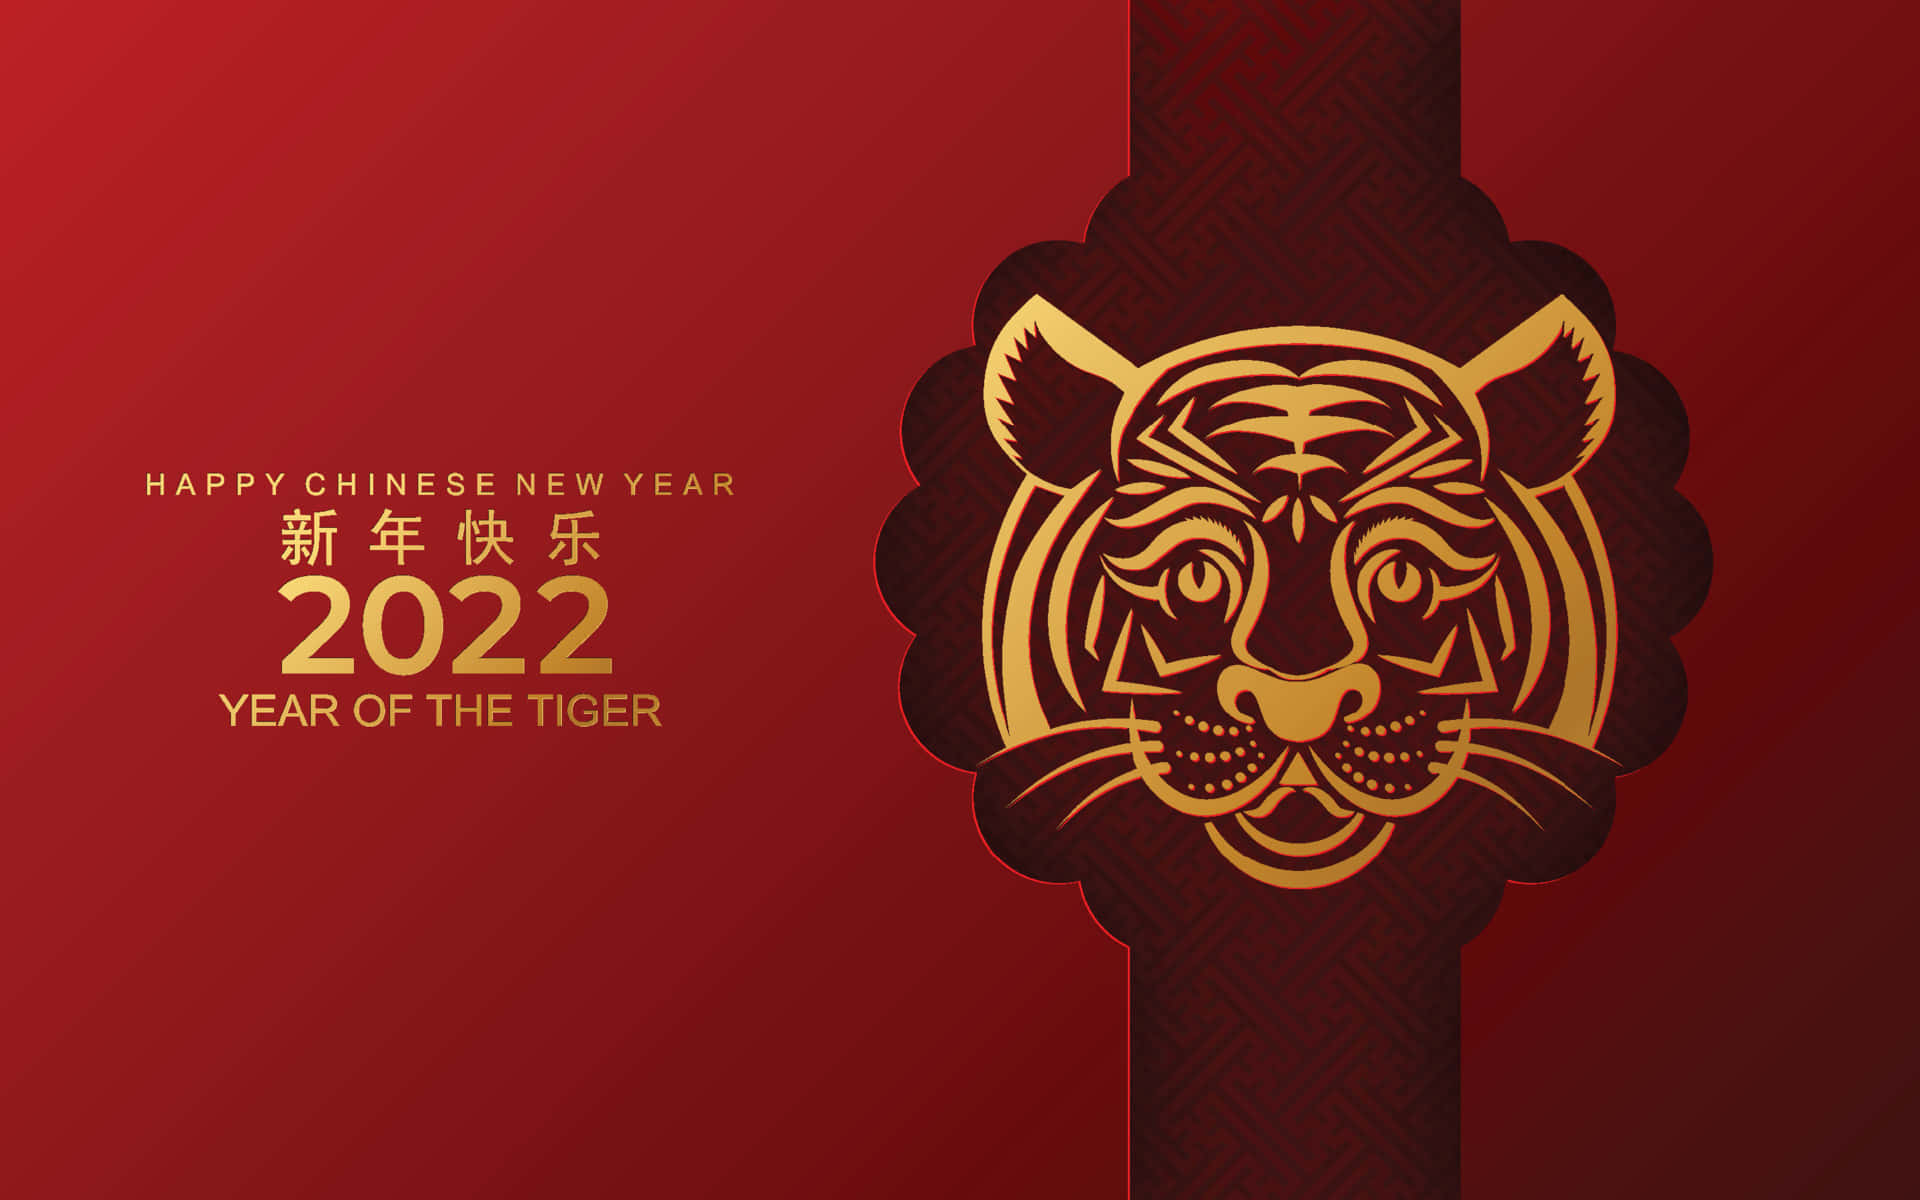 Feiernzum Chinesischen Neujahr 2022